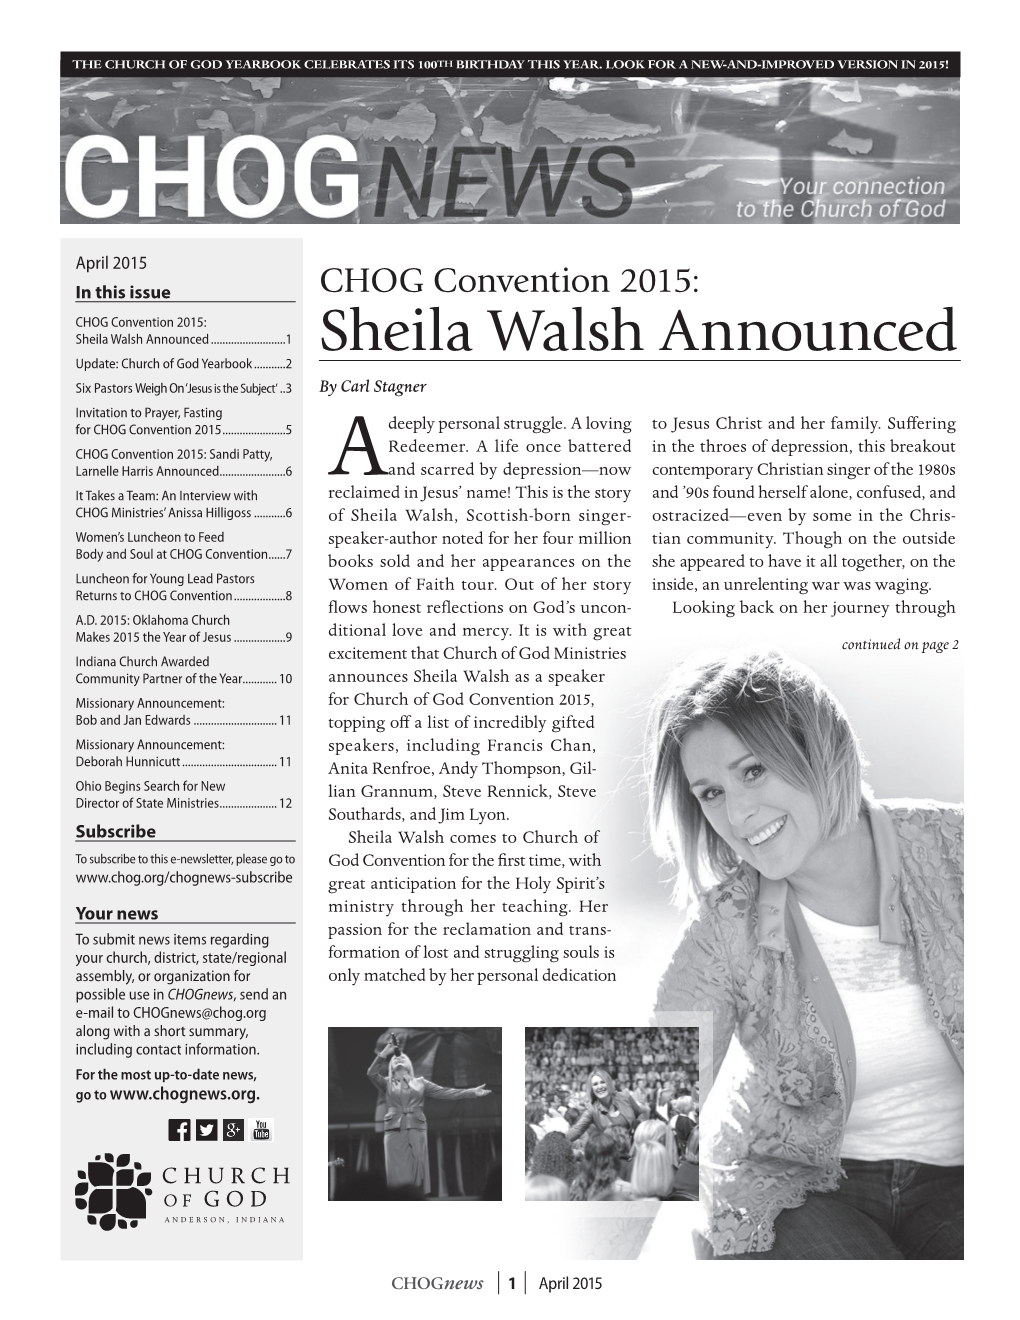 Sheila Walsh Announced